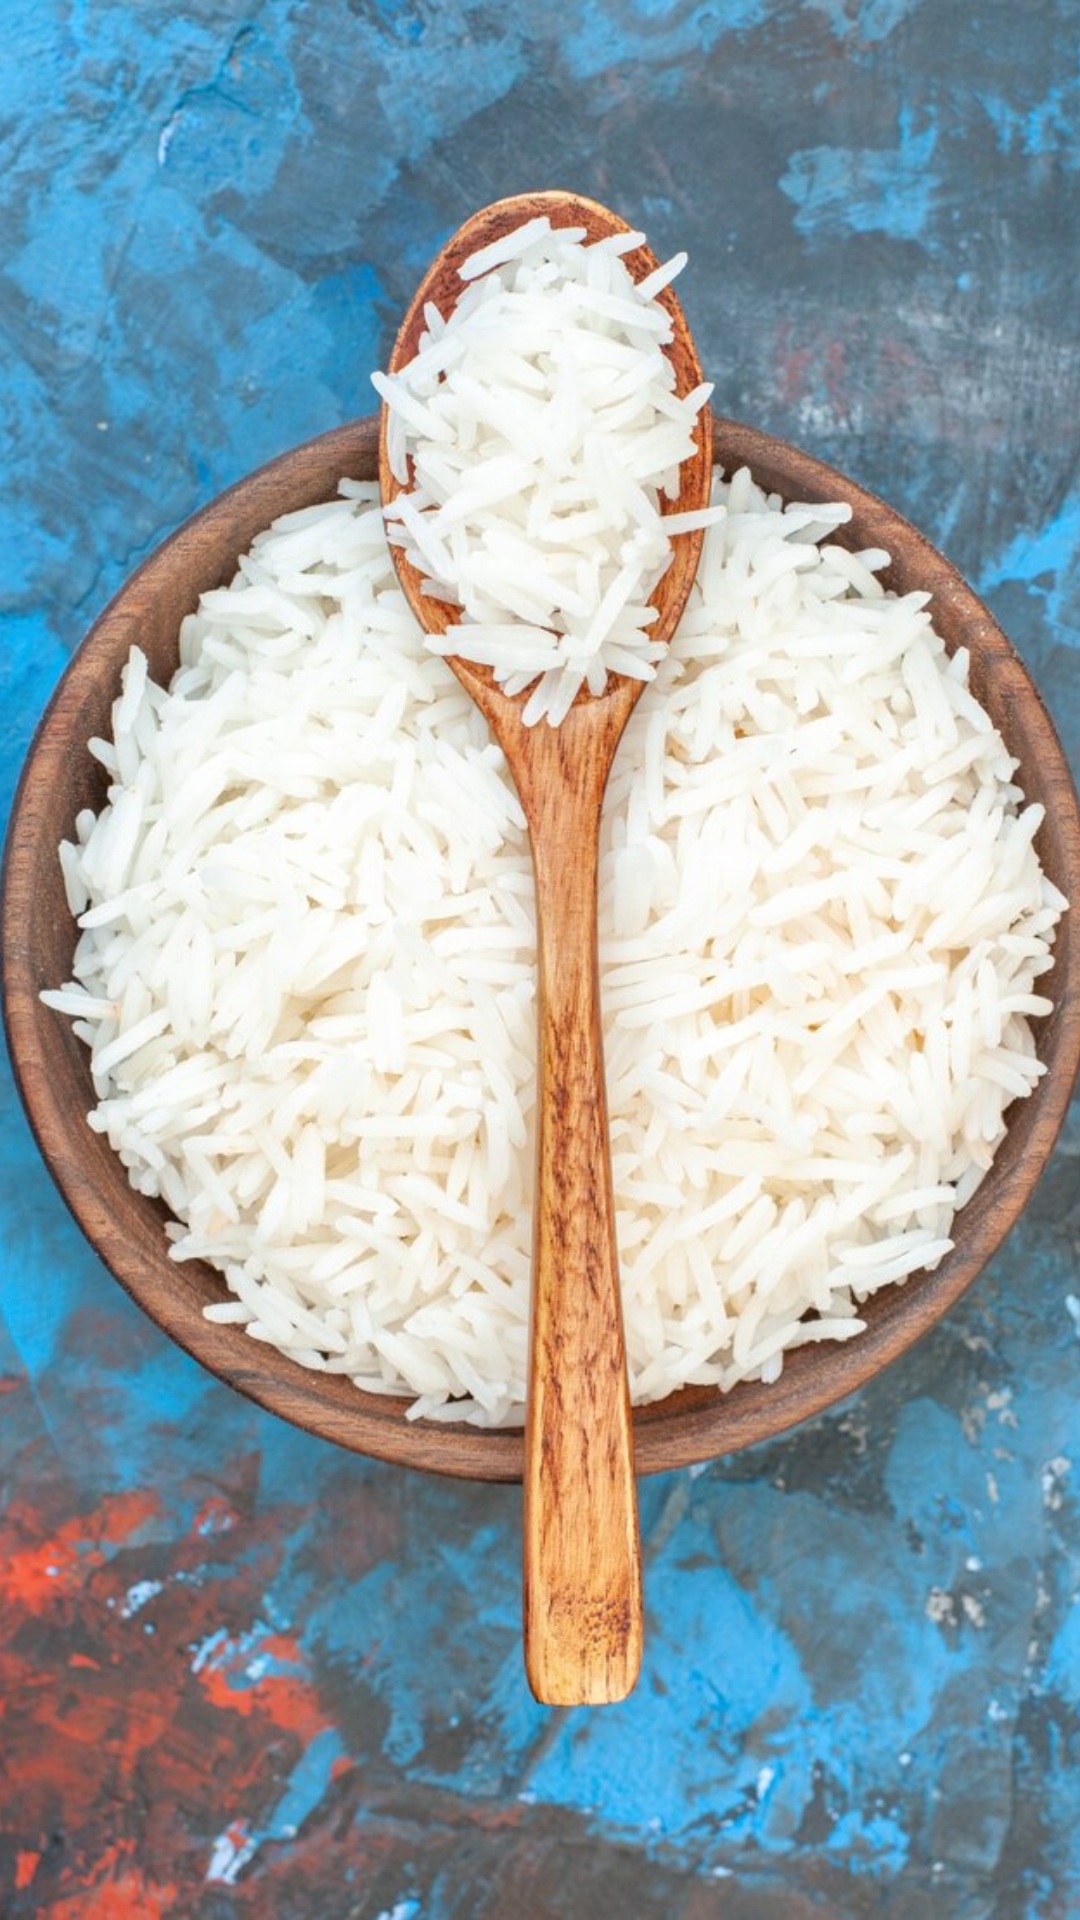 चावल खाने से ब्लड प्रेशर बढ़ता है क्या? जान लें क्या कहते हैं एक्सपर्ट